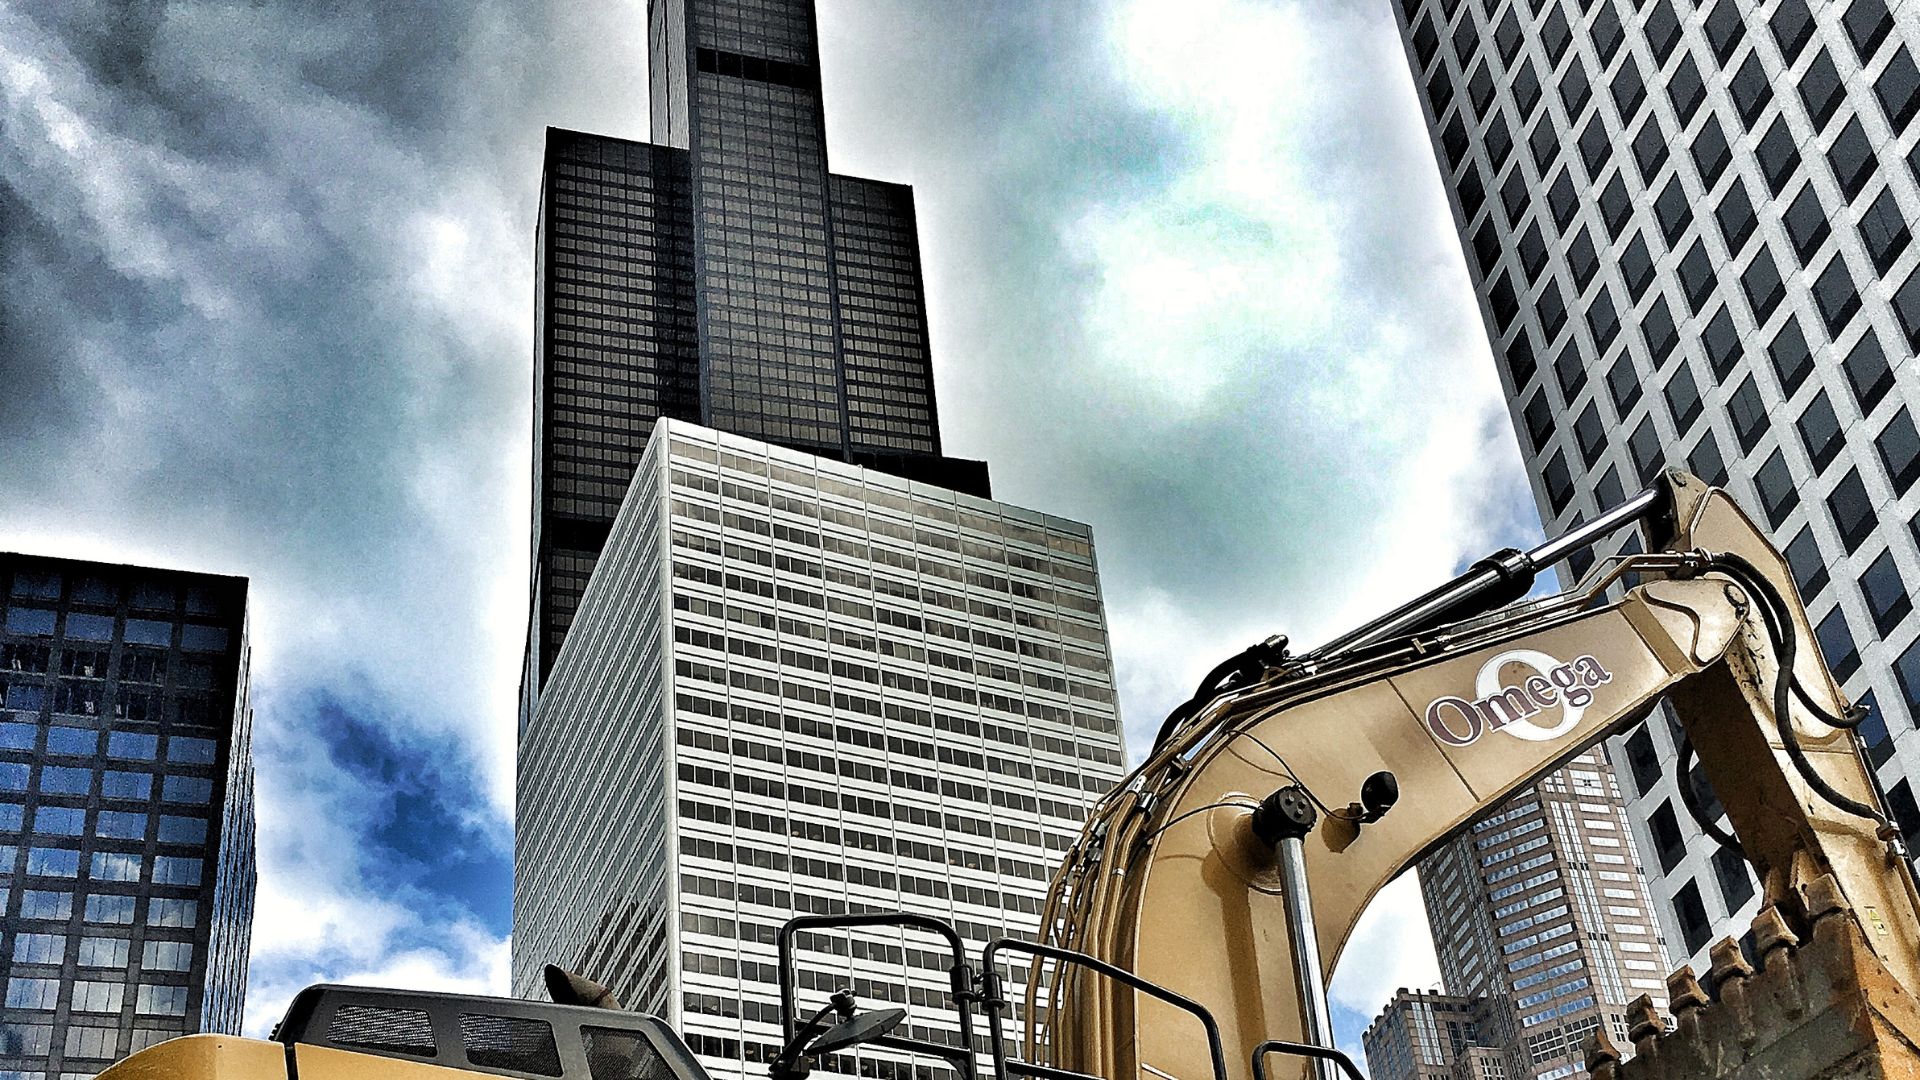 Demolition in Chicago